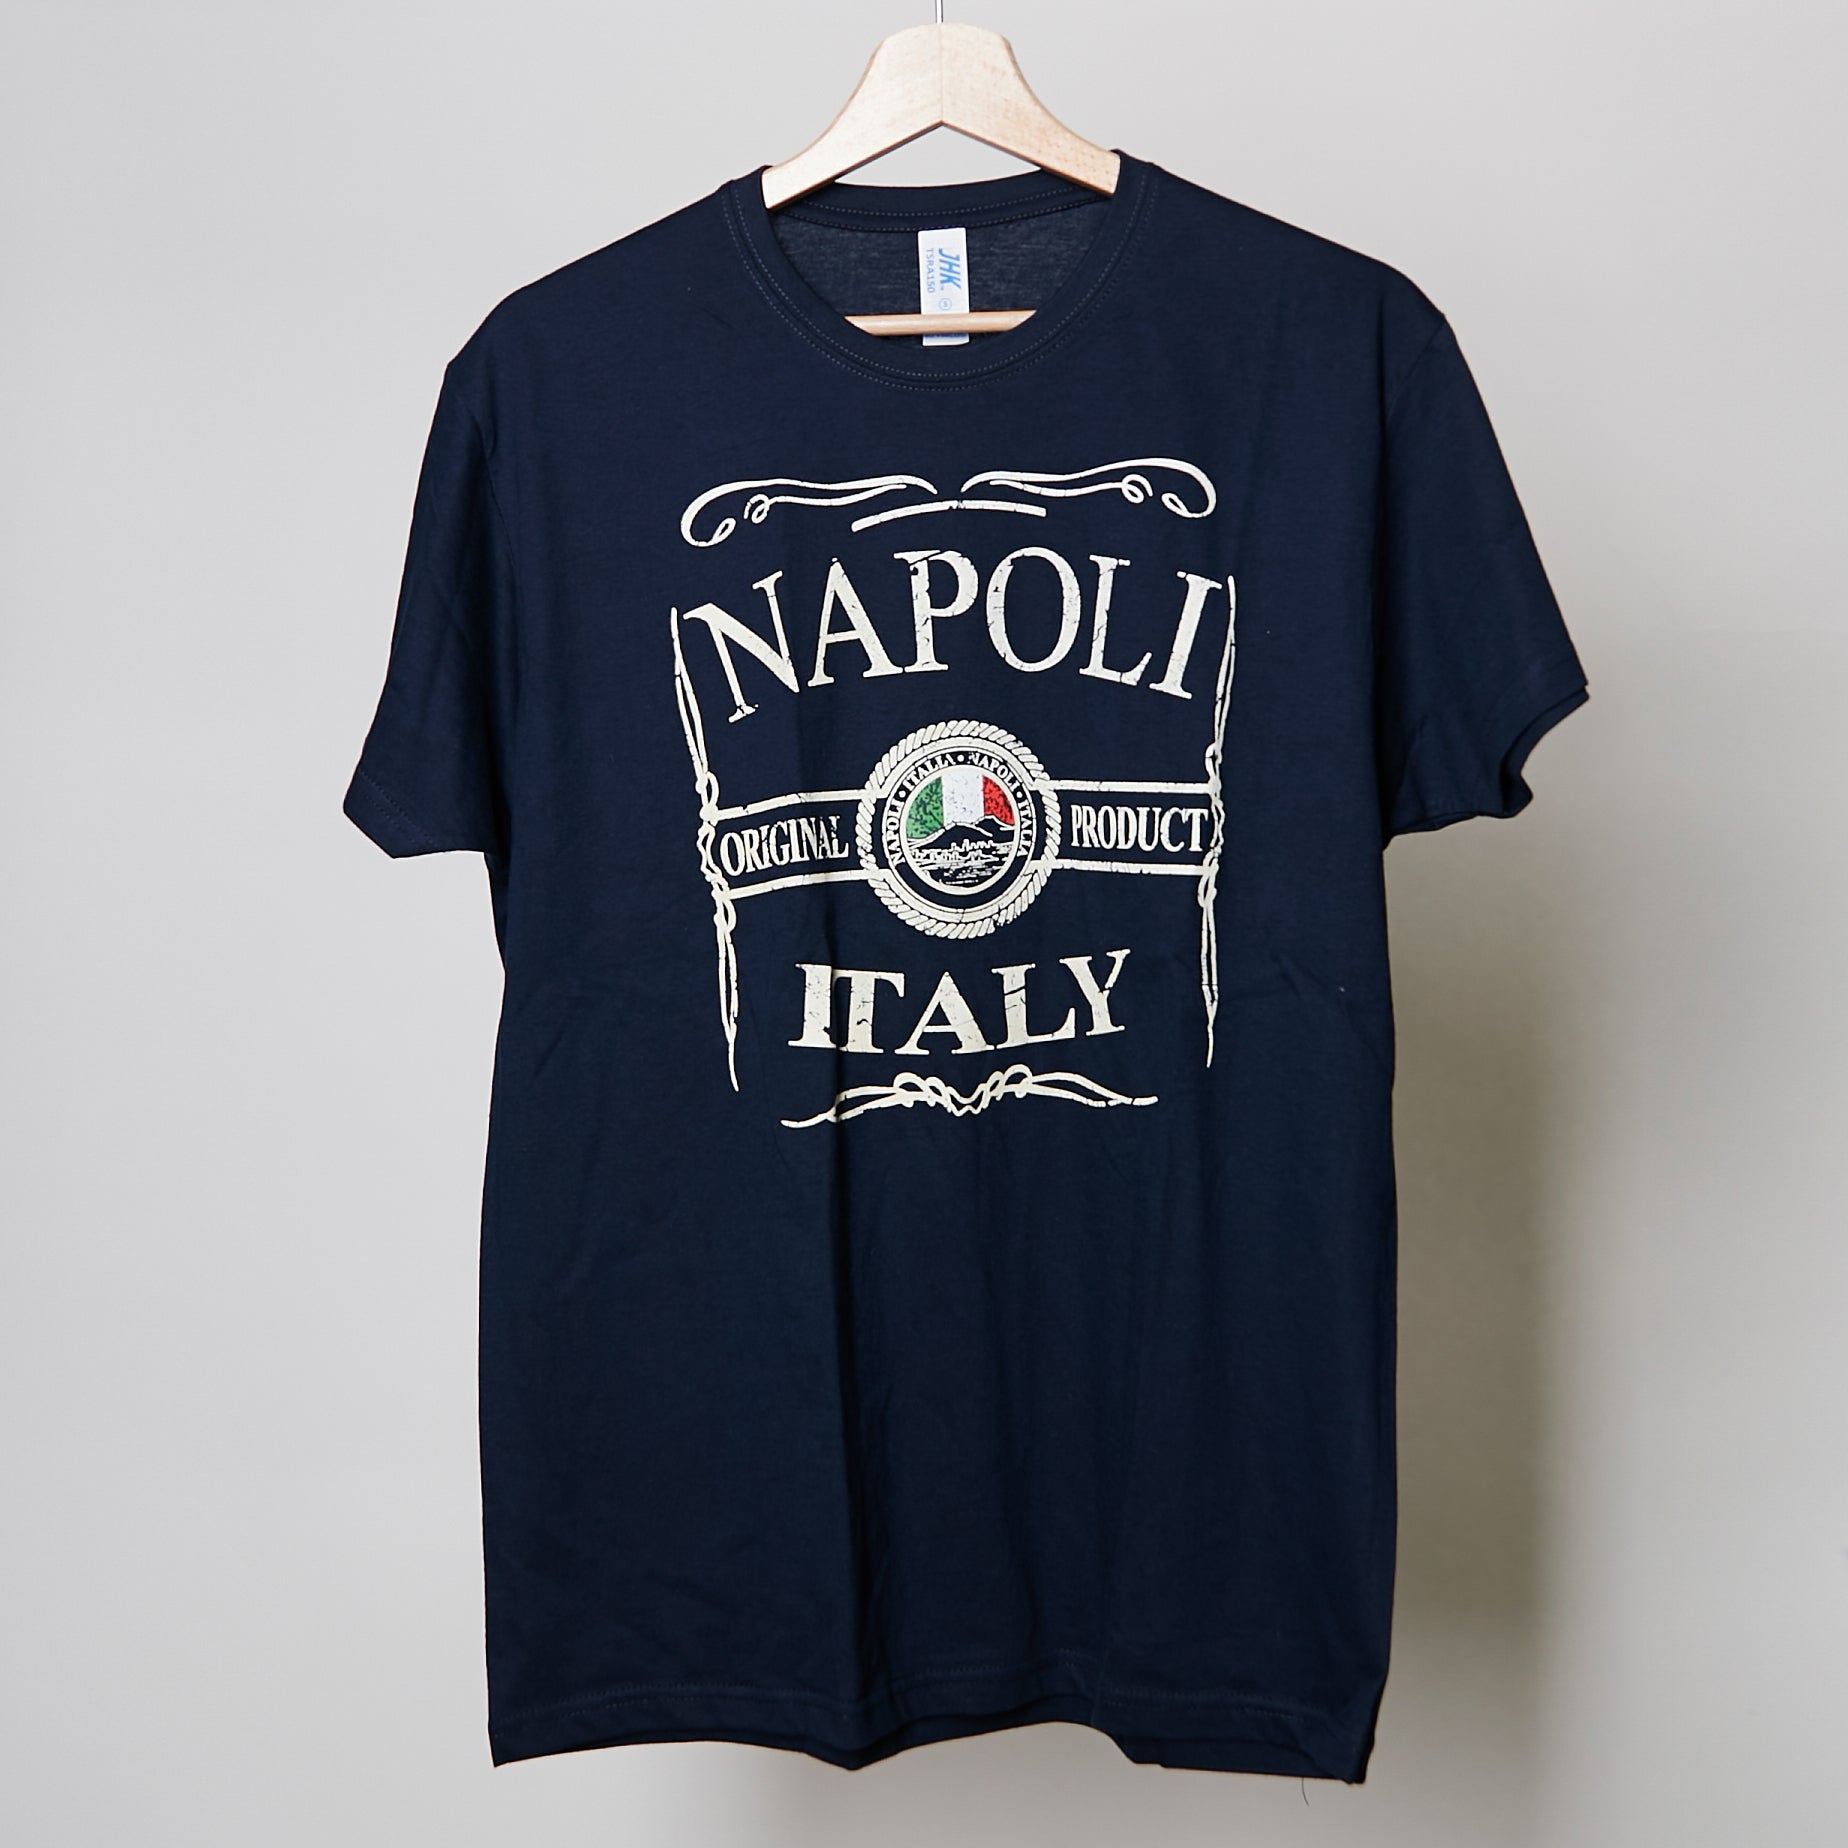 NAPLES-ITALY T-SHIRT